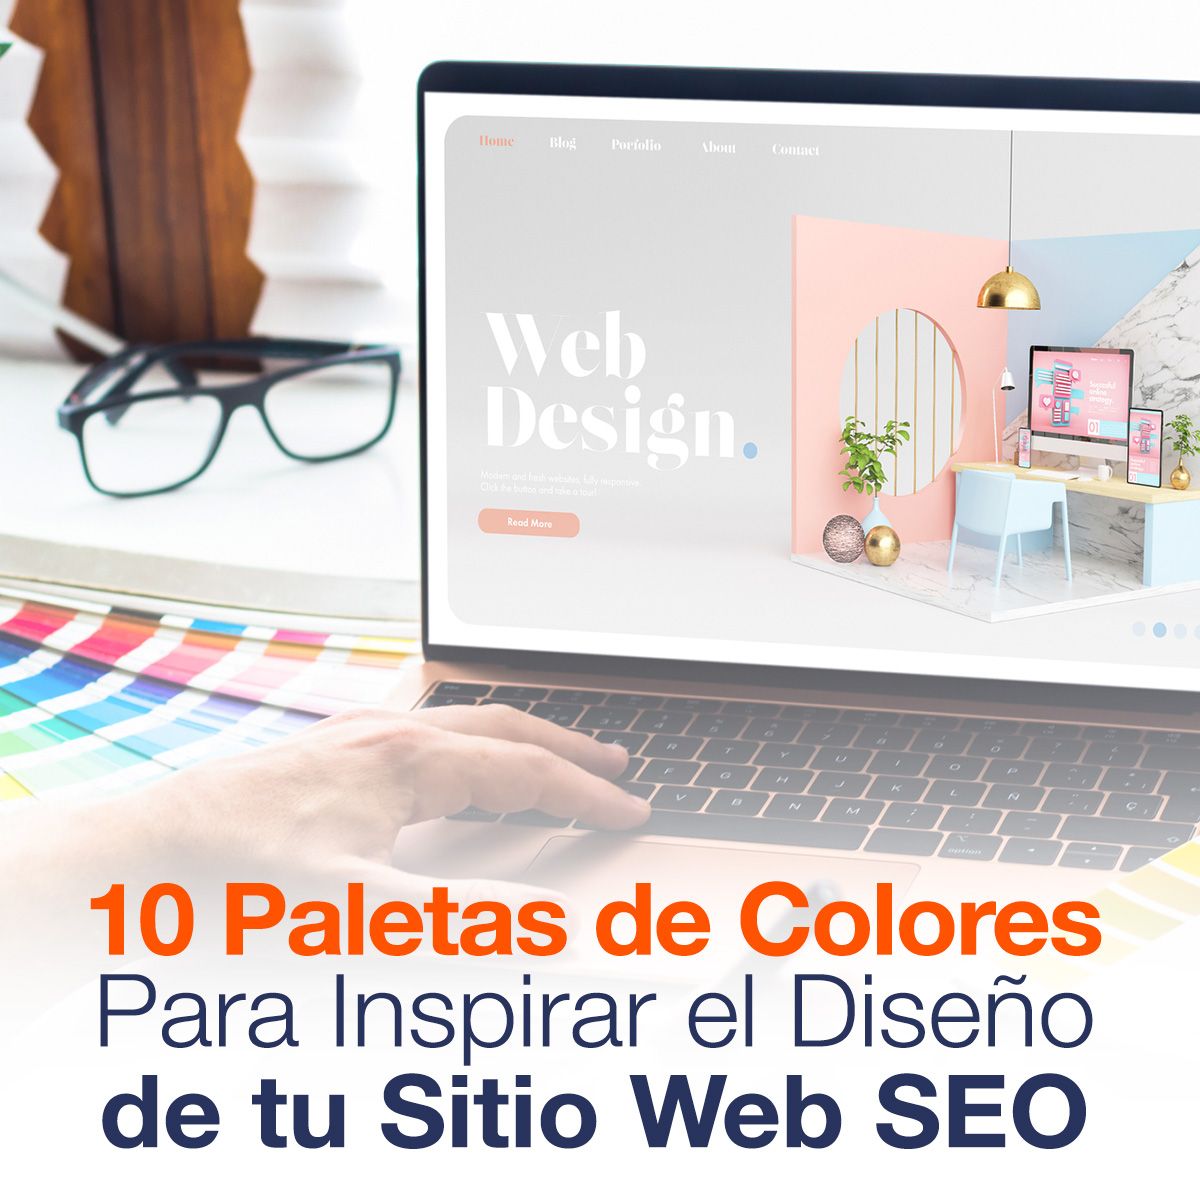 10 Paletas de Colores Para Inspirar el Diseño de tu Sitio Web SEO